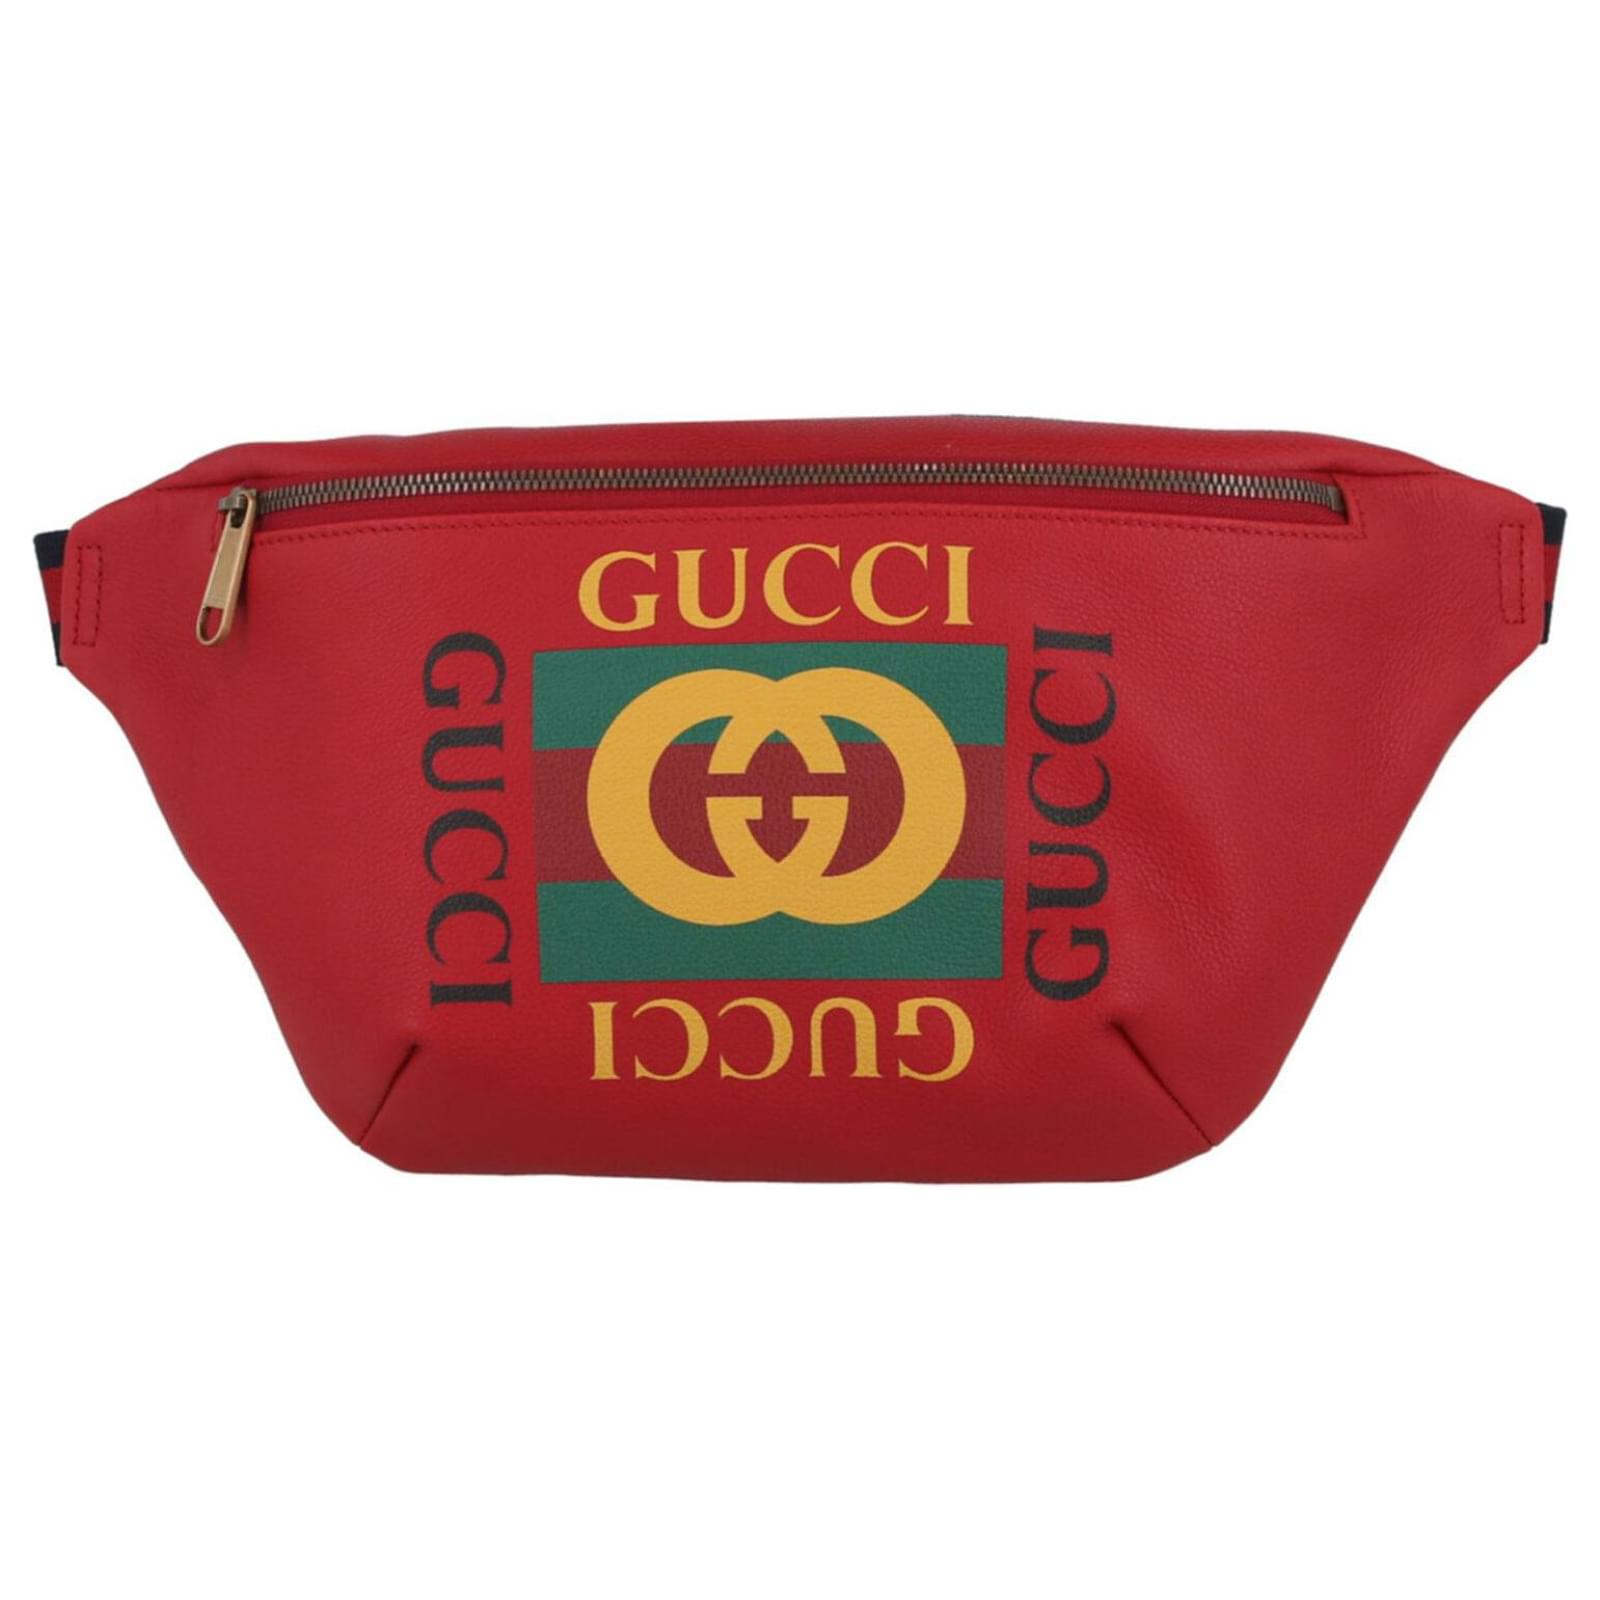 Gucci Large Grained Calfskin Logo Belt Bag Black